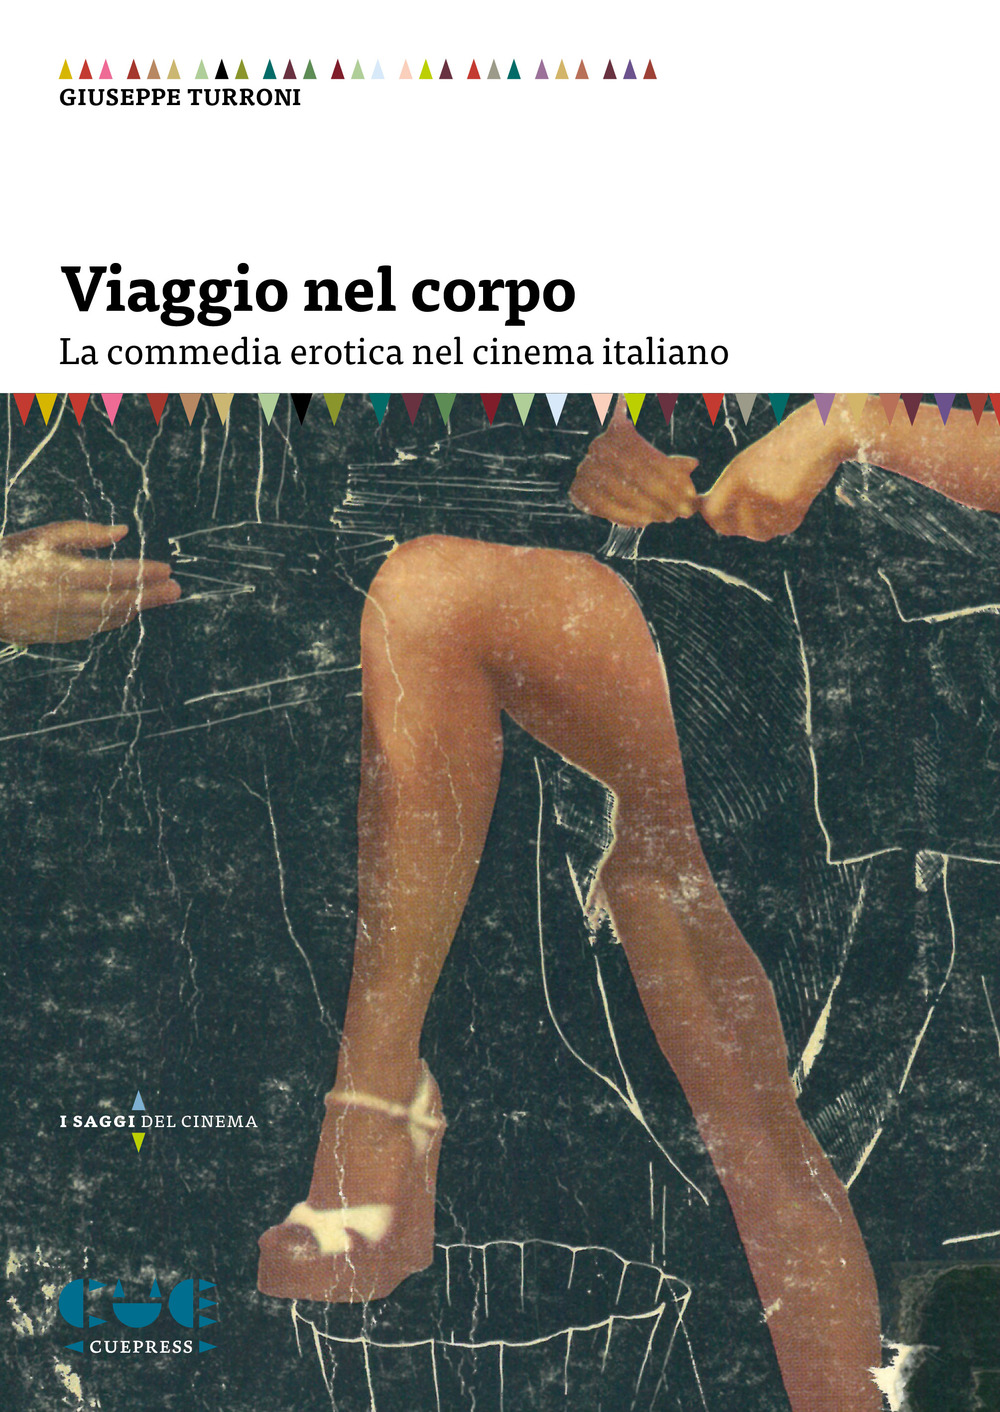 Libri Turroni Giuseppe - Viaggio Nel Corpo. La Commedia Erotica Nel Cinema Italiano NUOVO SIGILLATO, EDIZIONE DEL 06/09/2019 SUBITO DISPONIBILE